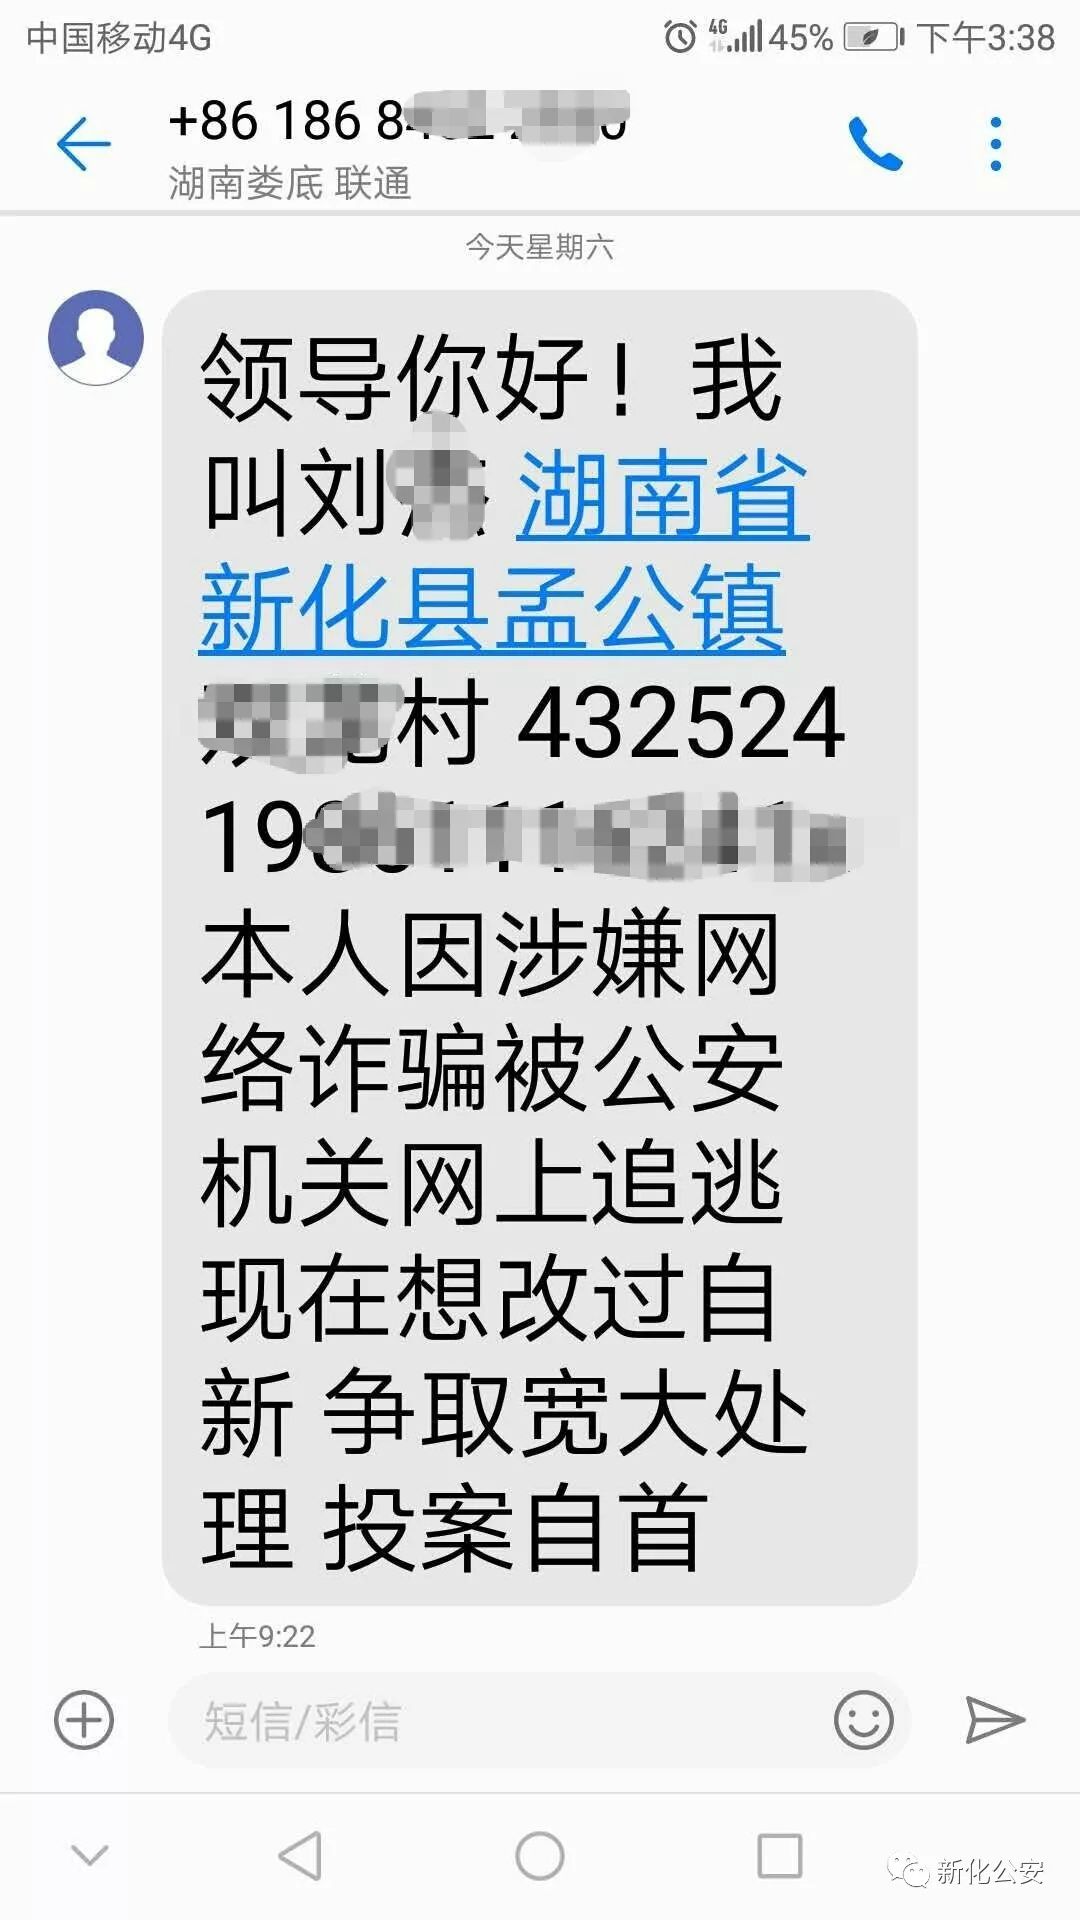 这是孟公派出所辖区电诈逃犯刘某发来准备投案自首的短信